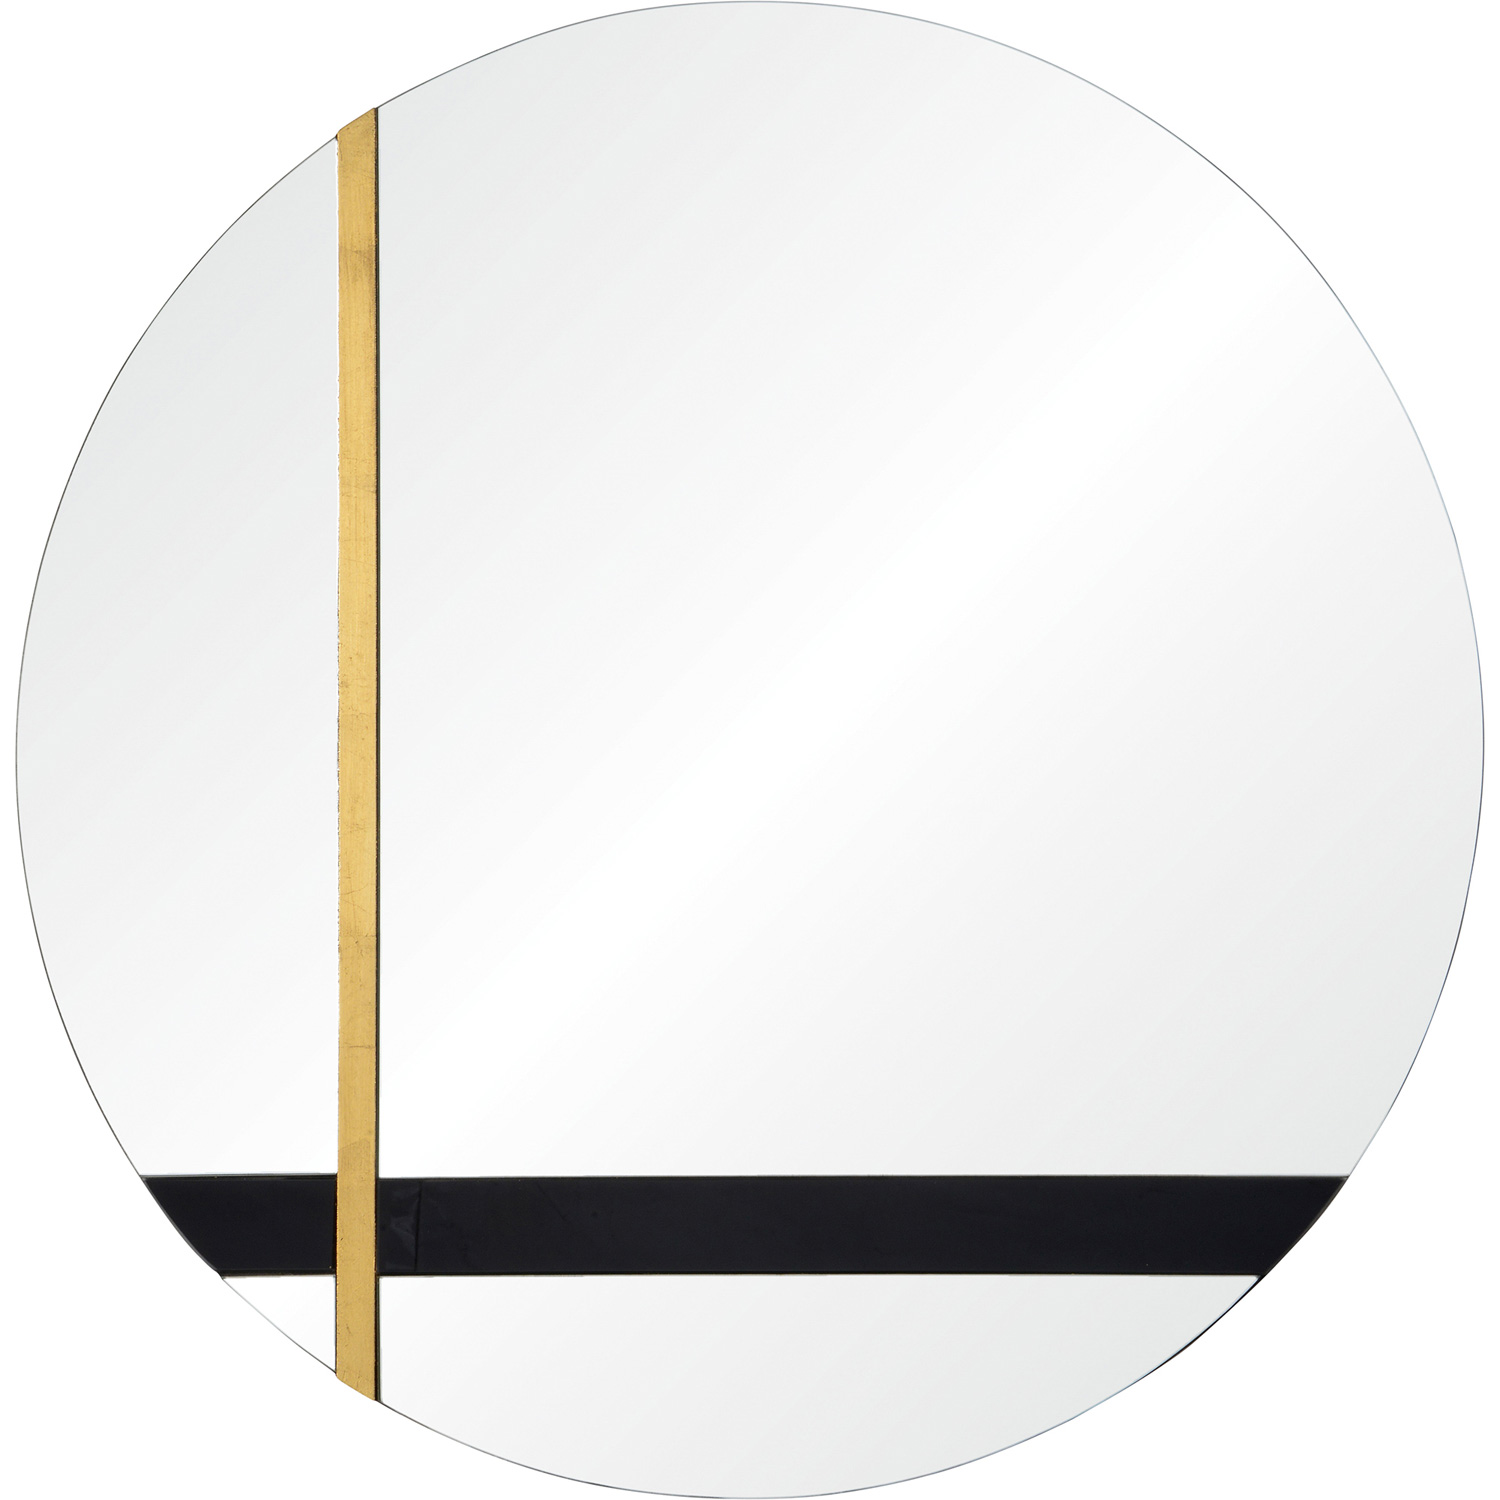 Ren-Wil Gavin Round Mirror - Silver/Black Tint/Gold Leaf